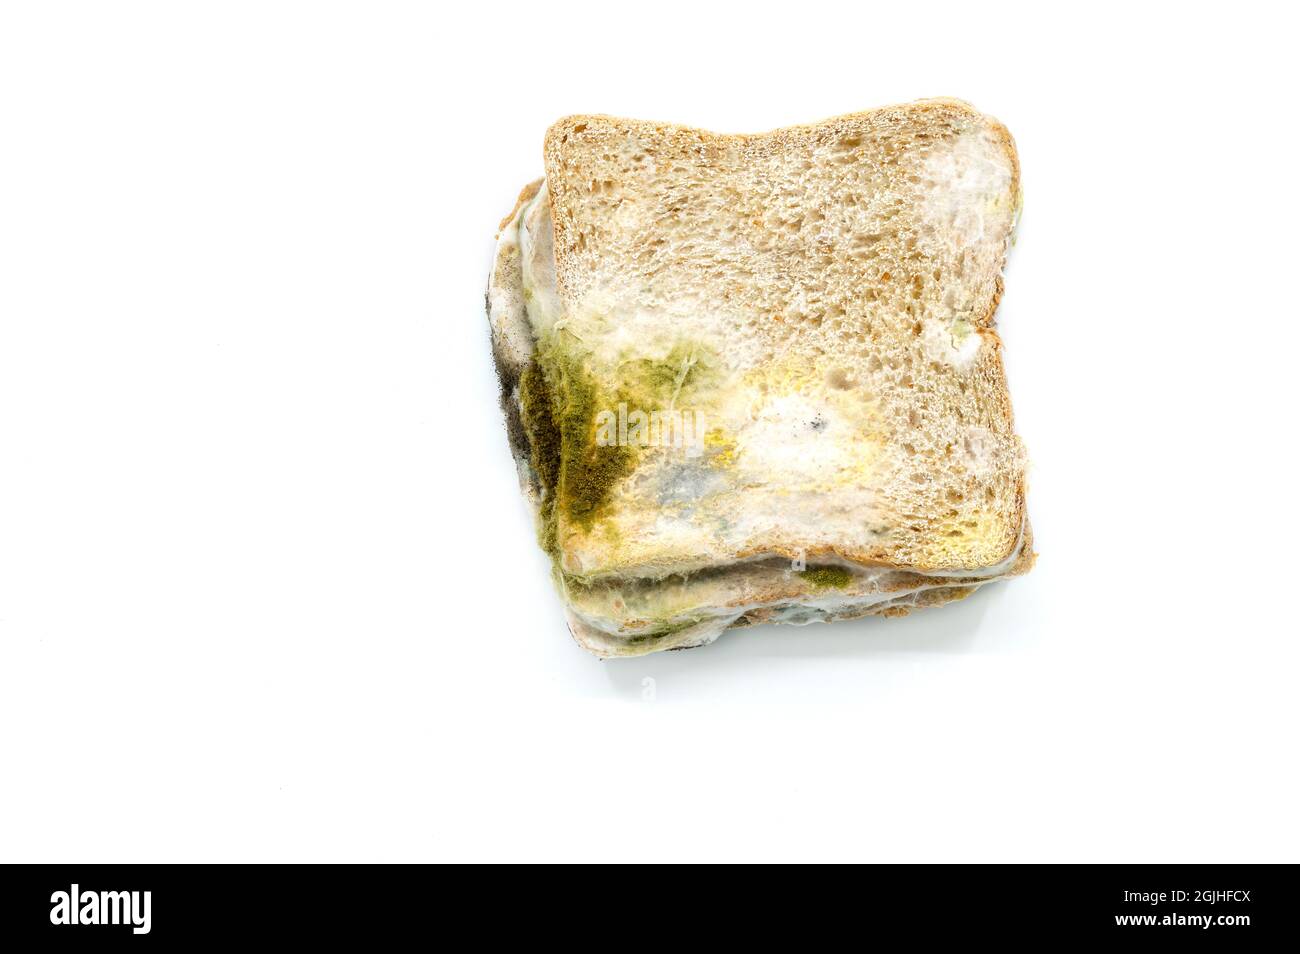 Piatto di pane vecchio che pieno di muffa di pane, chiudere il pane ammuffito su sfondo bianco. Foto Stock